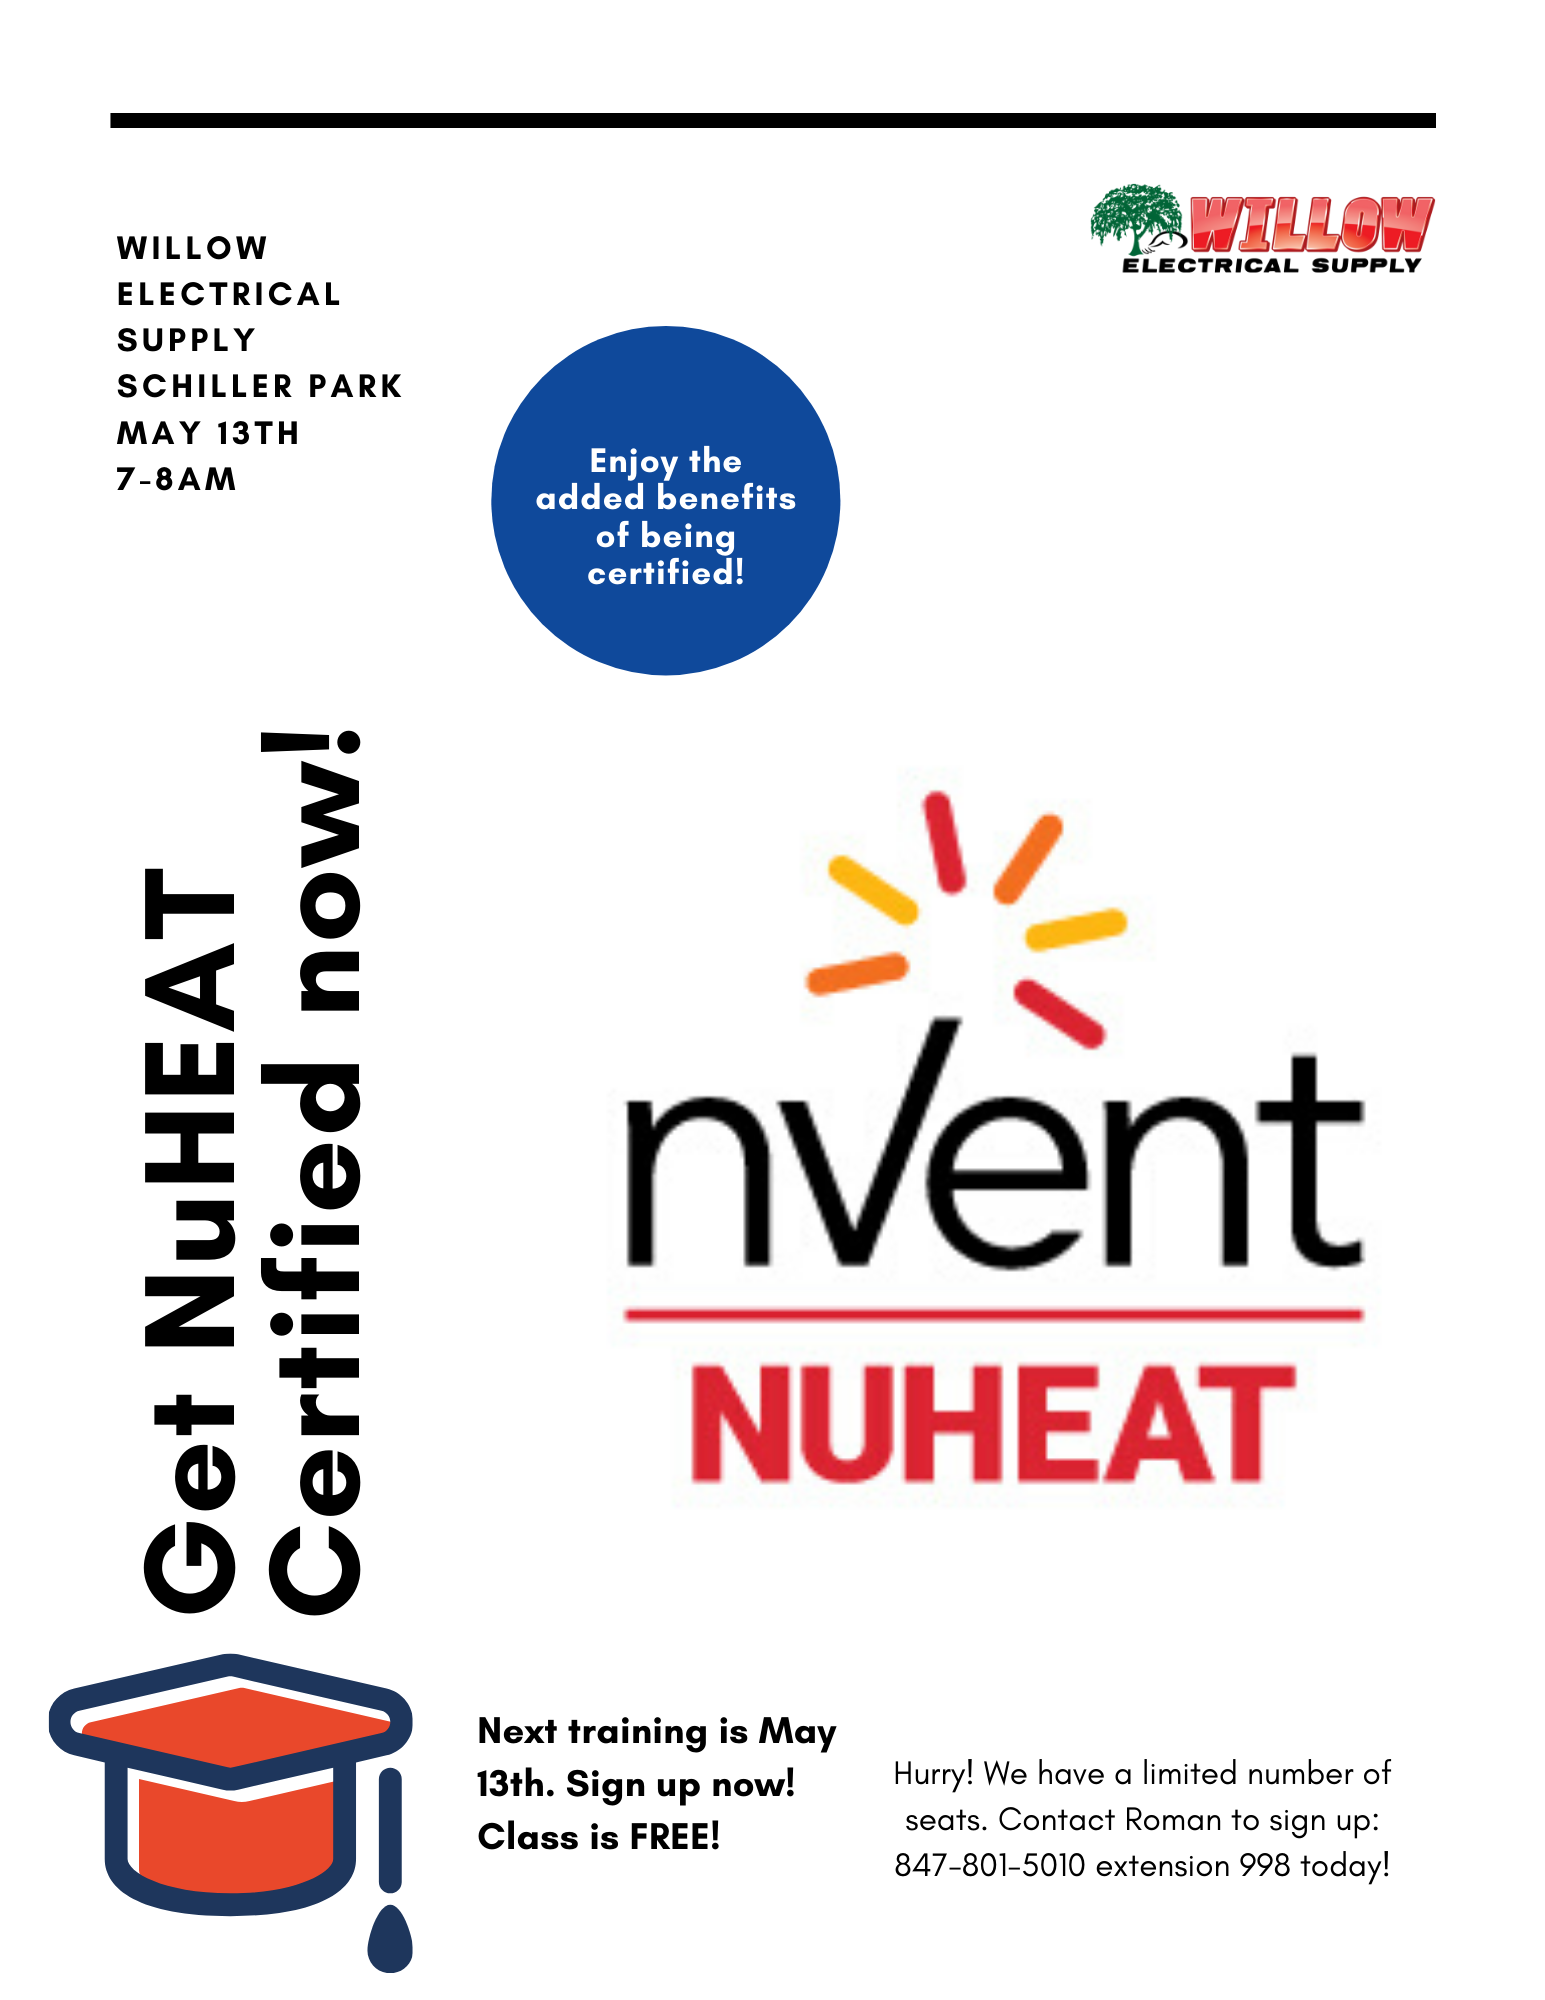 Get NuHeat Certified